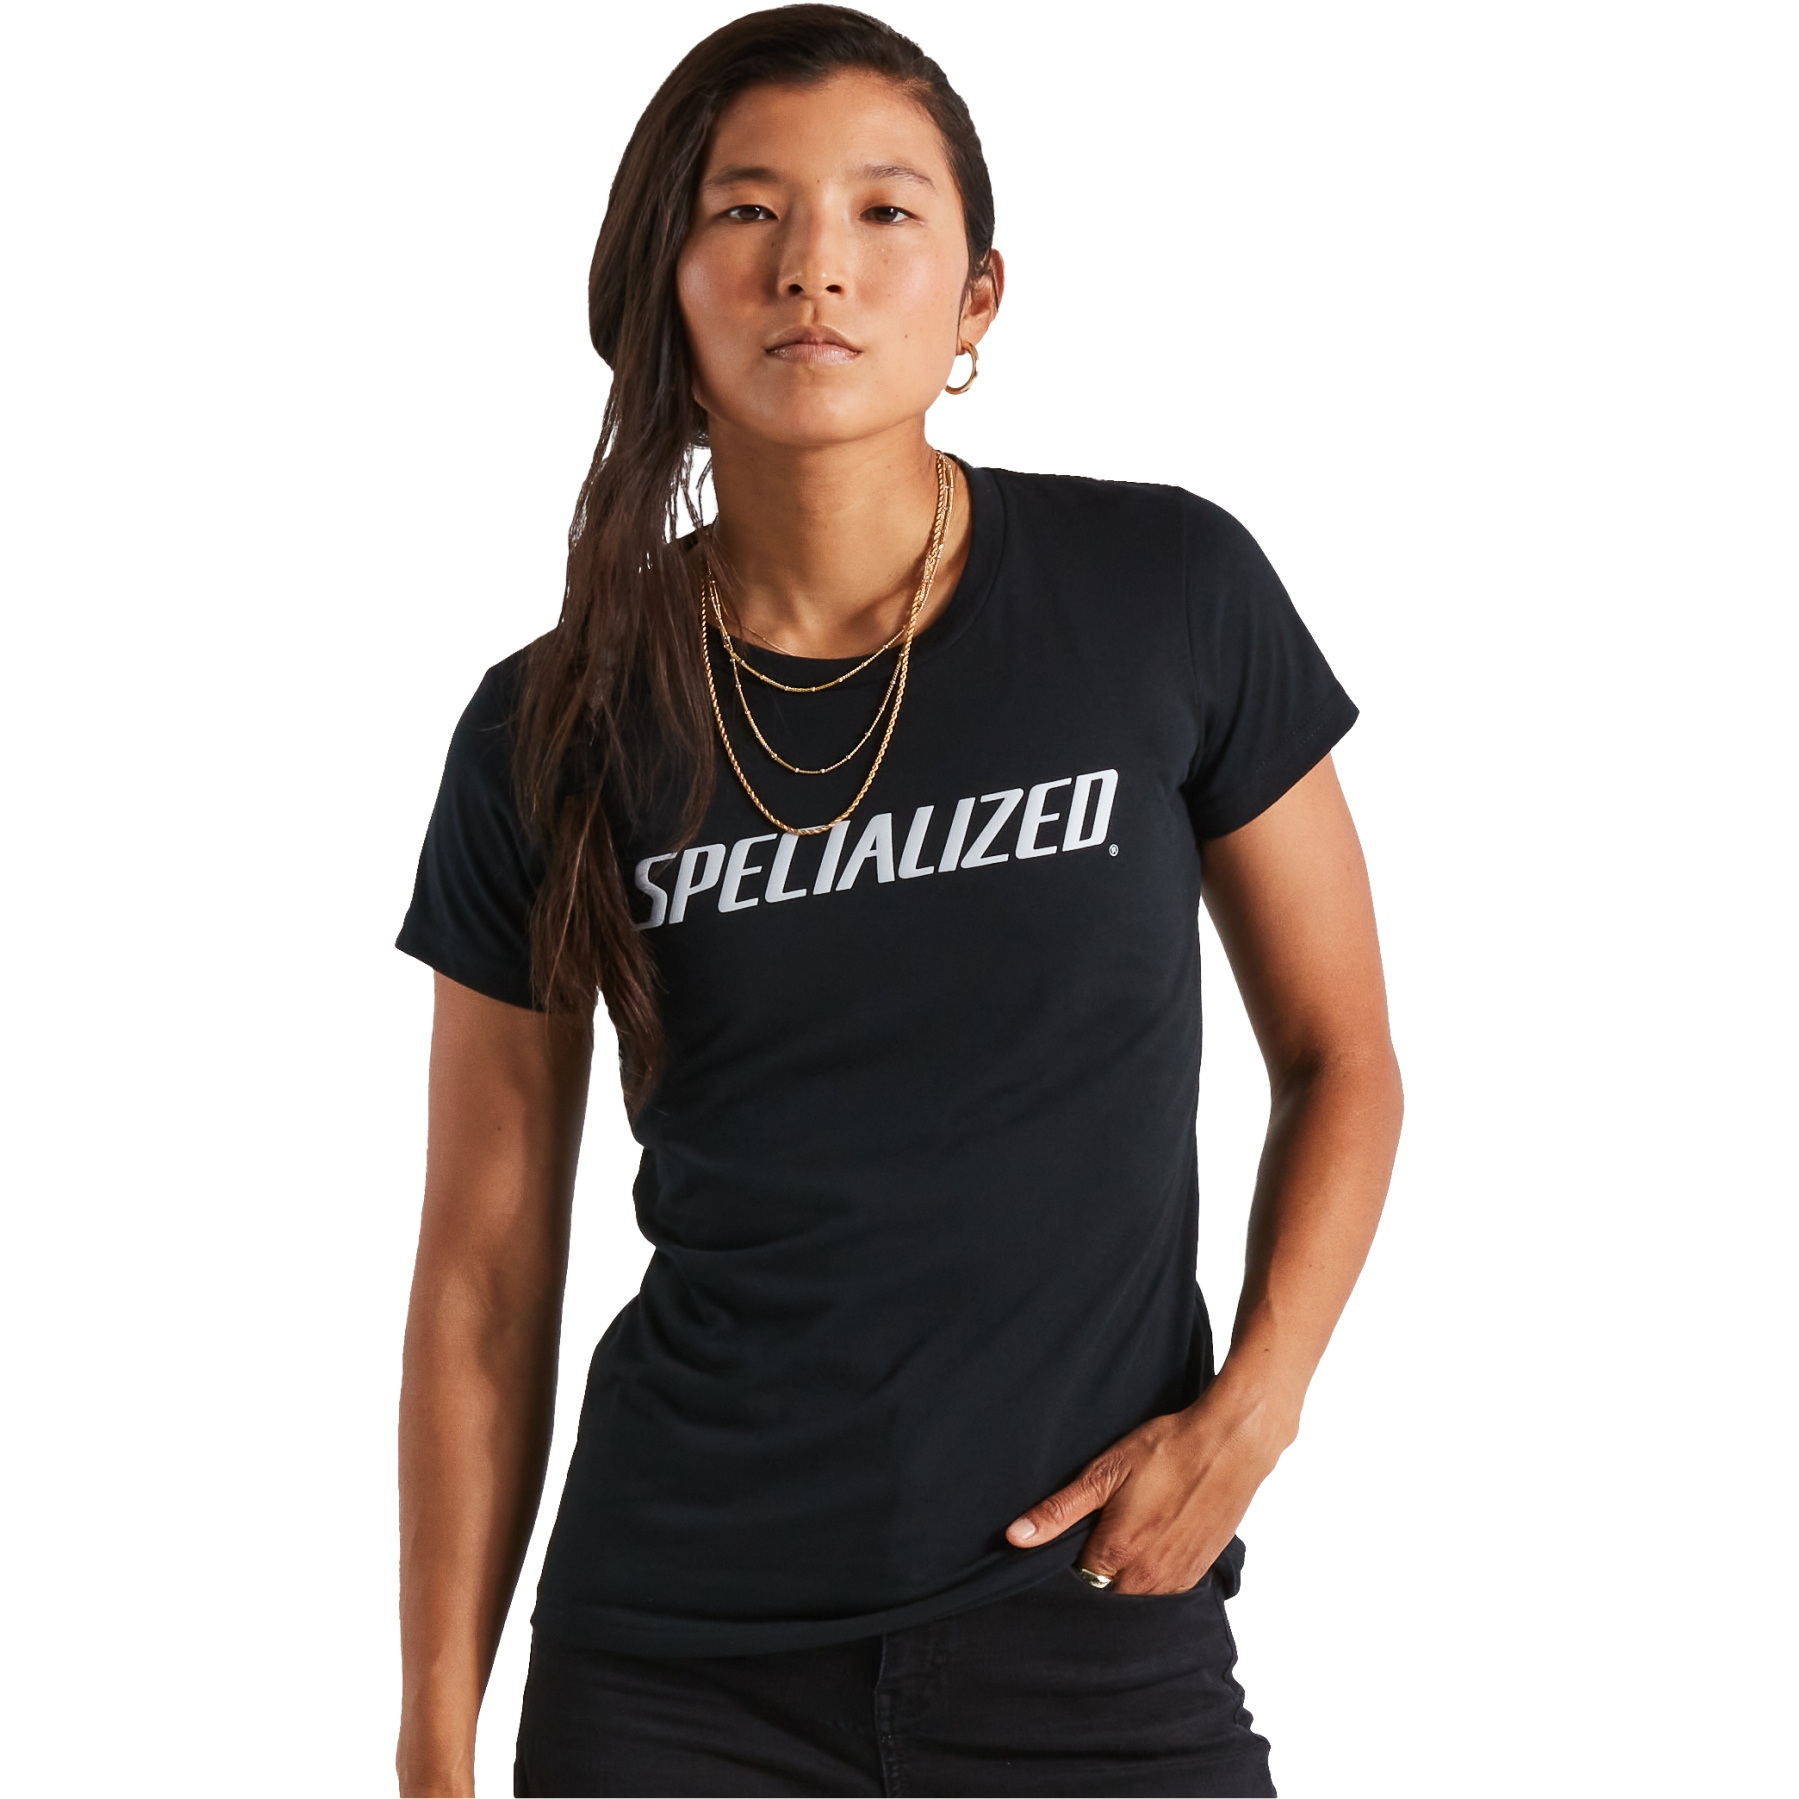 Image de Specialized T-Shirt Femme - Wordmark - noir